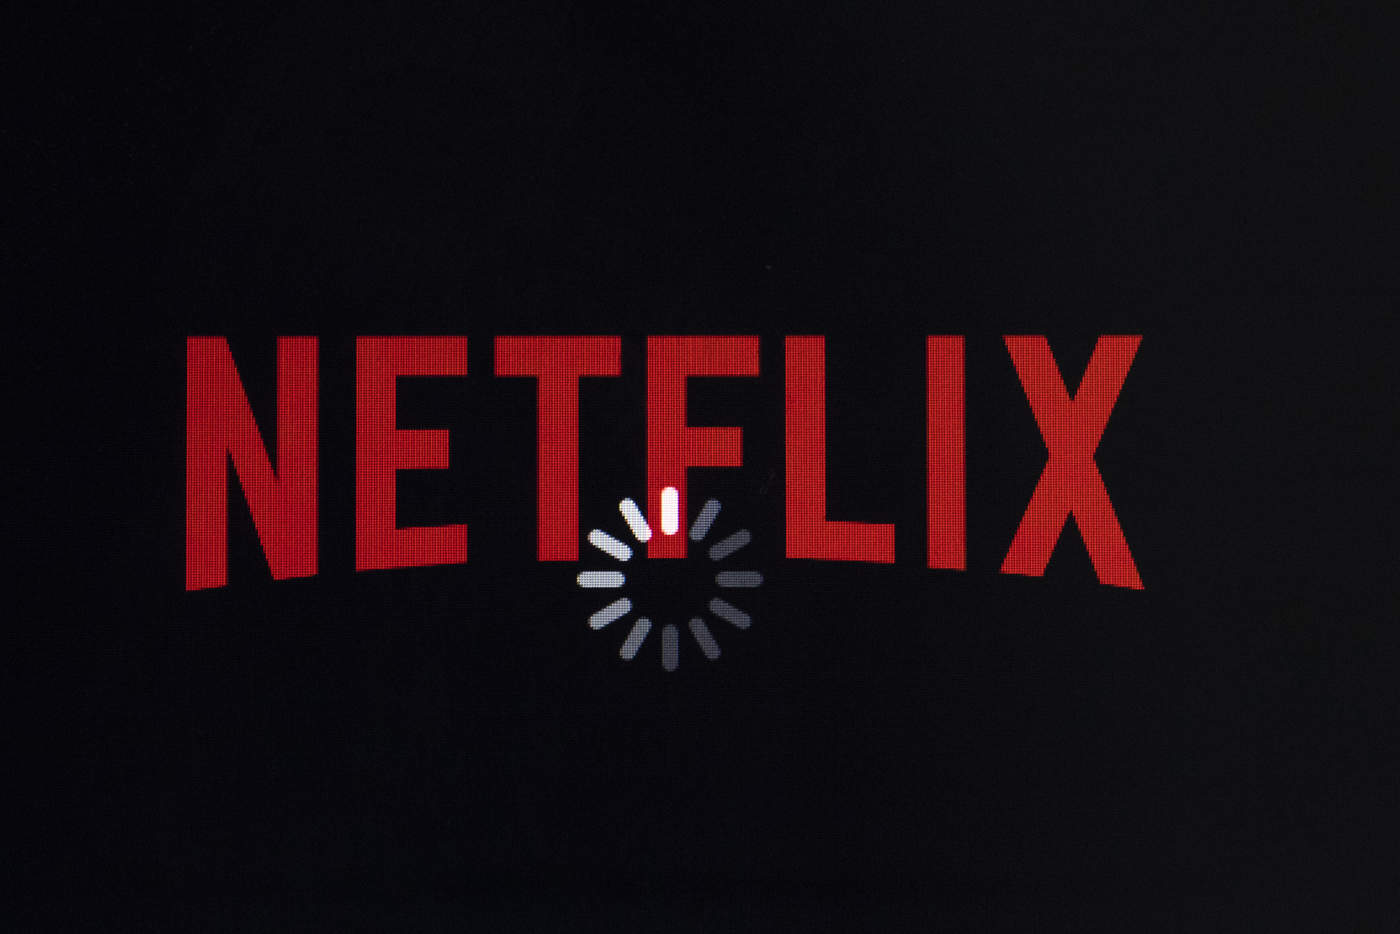 Ayer martes la compañía de contenido en streaming Netflix anunció un aumento en el precio de sus suscripciones de entre un 13% y un 18%, el cual afectará inmediatamente a los nuevos clientes y llegará a los actuales usuarios durante los próximos tres meses. (ARCHIVO)